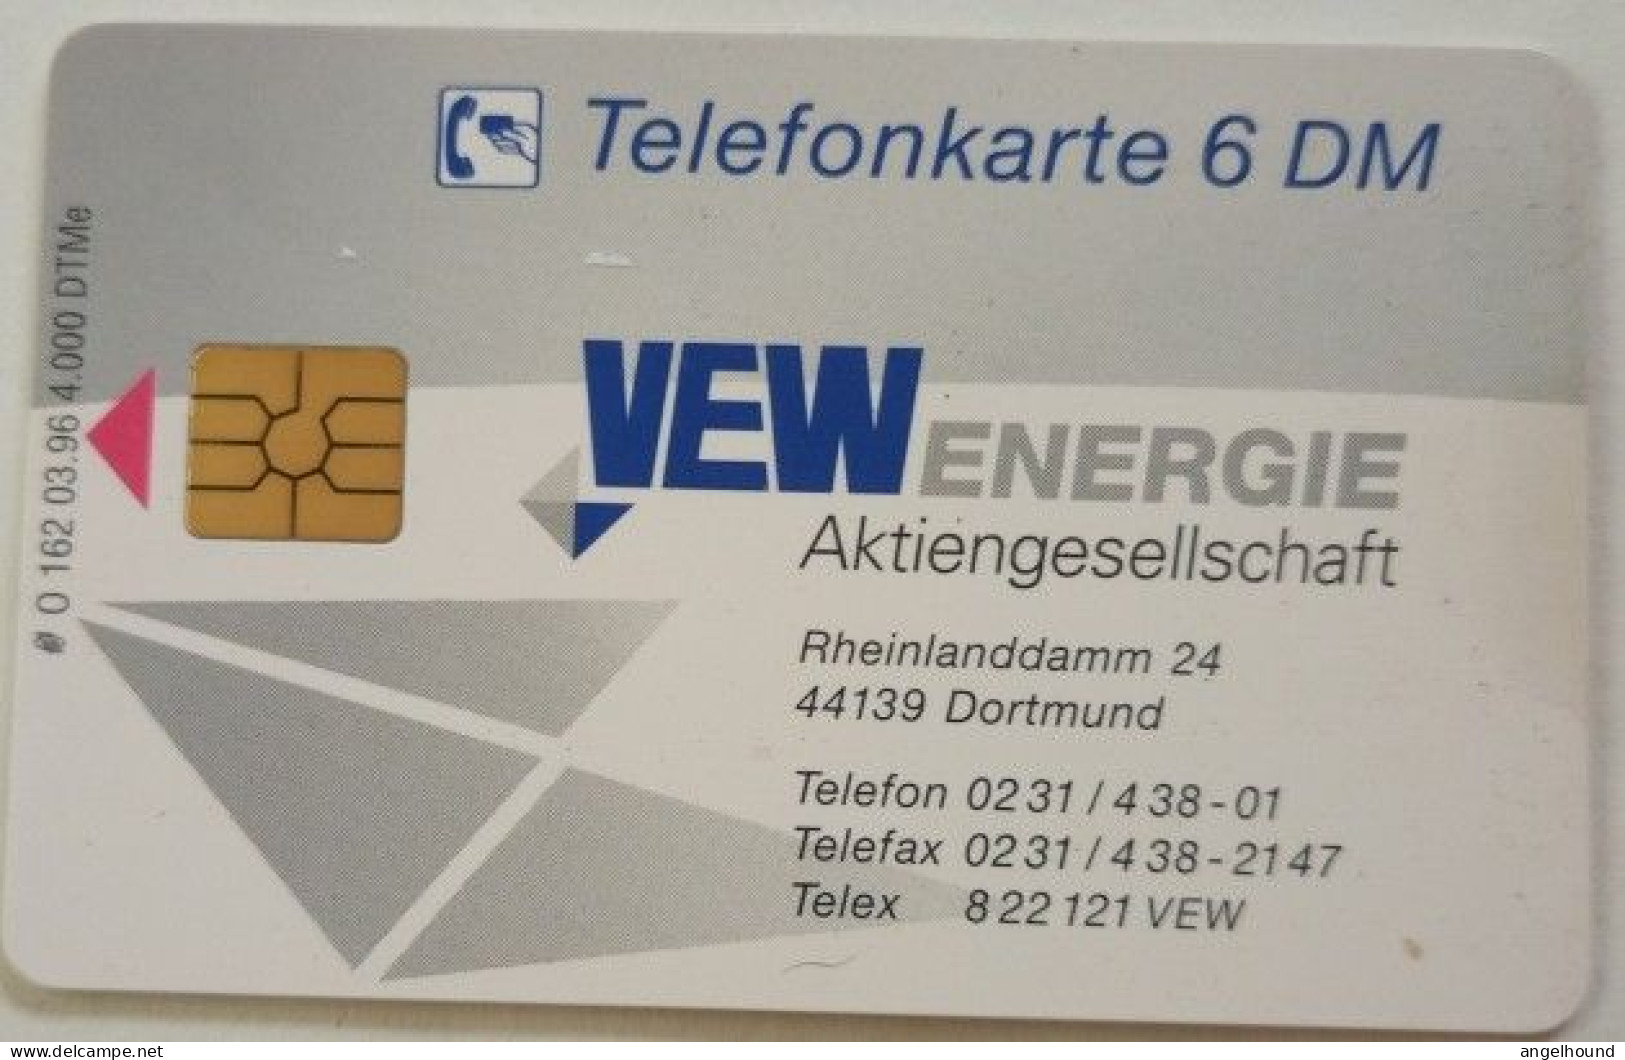 Germany  6DM  MINT O 162  VEW Energie  Dortmund    Only 4,000 Issued - O-Series: Kundenserie Vom Sammlerservice Ausgeschlossen